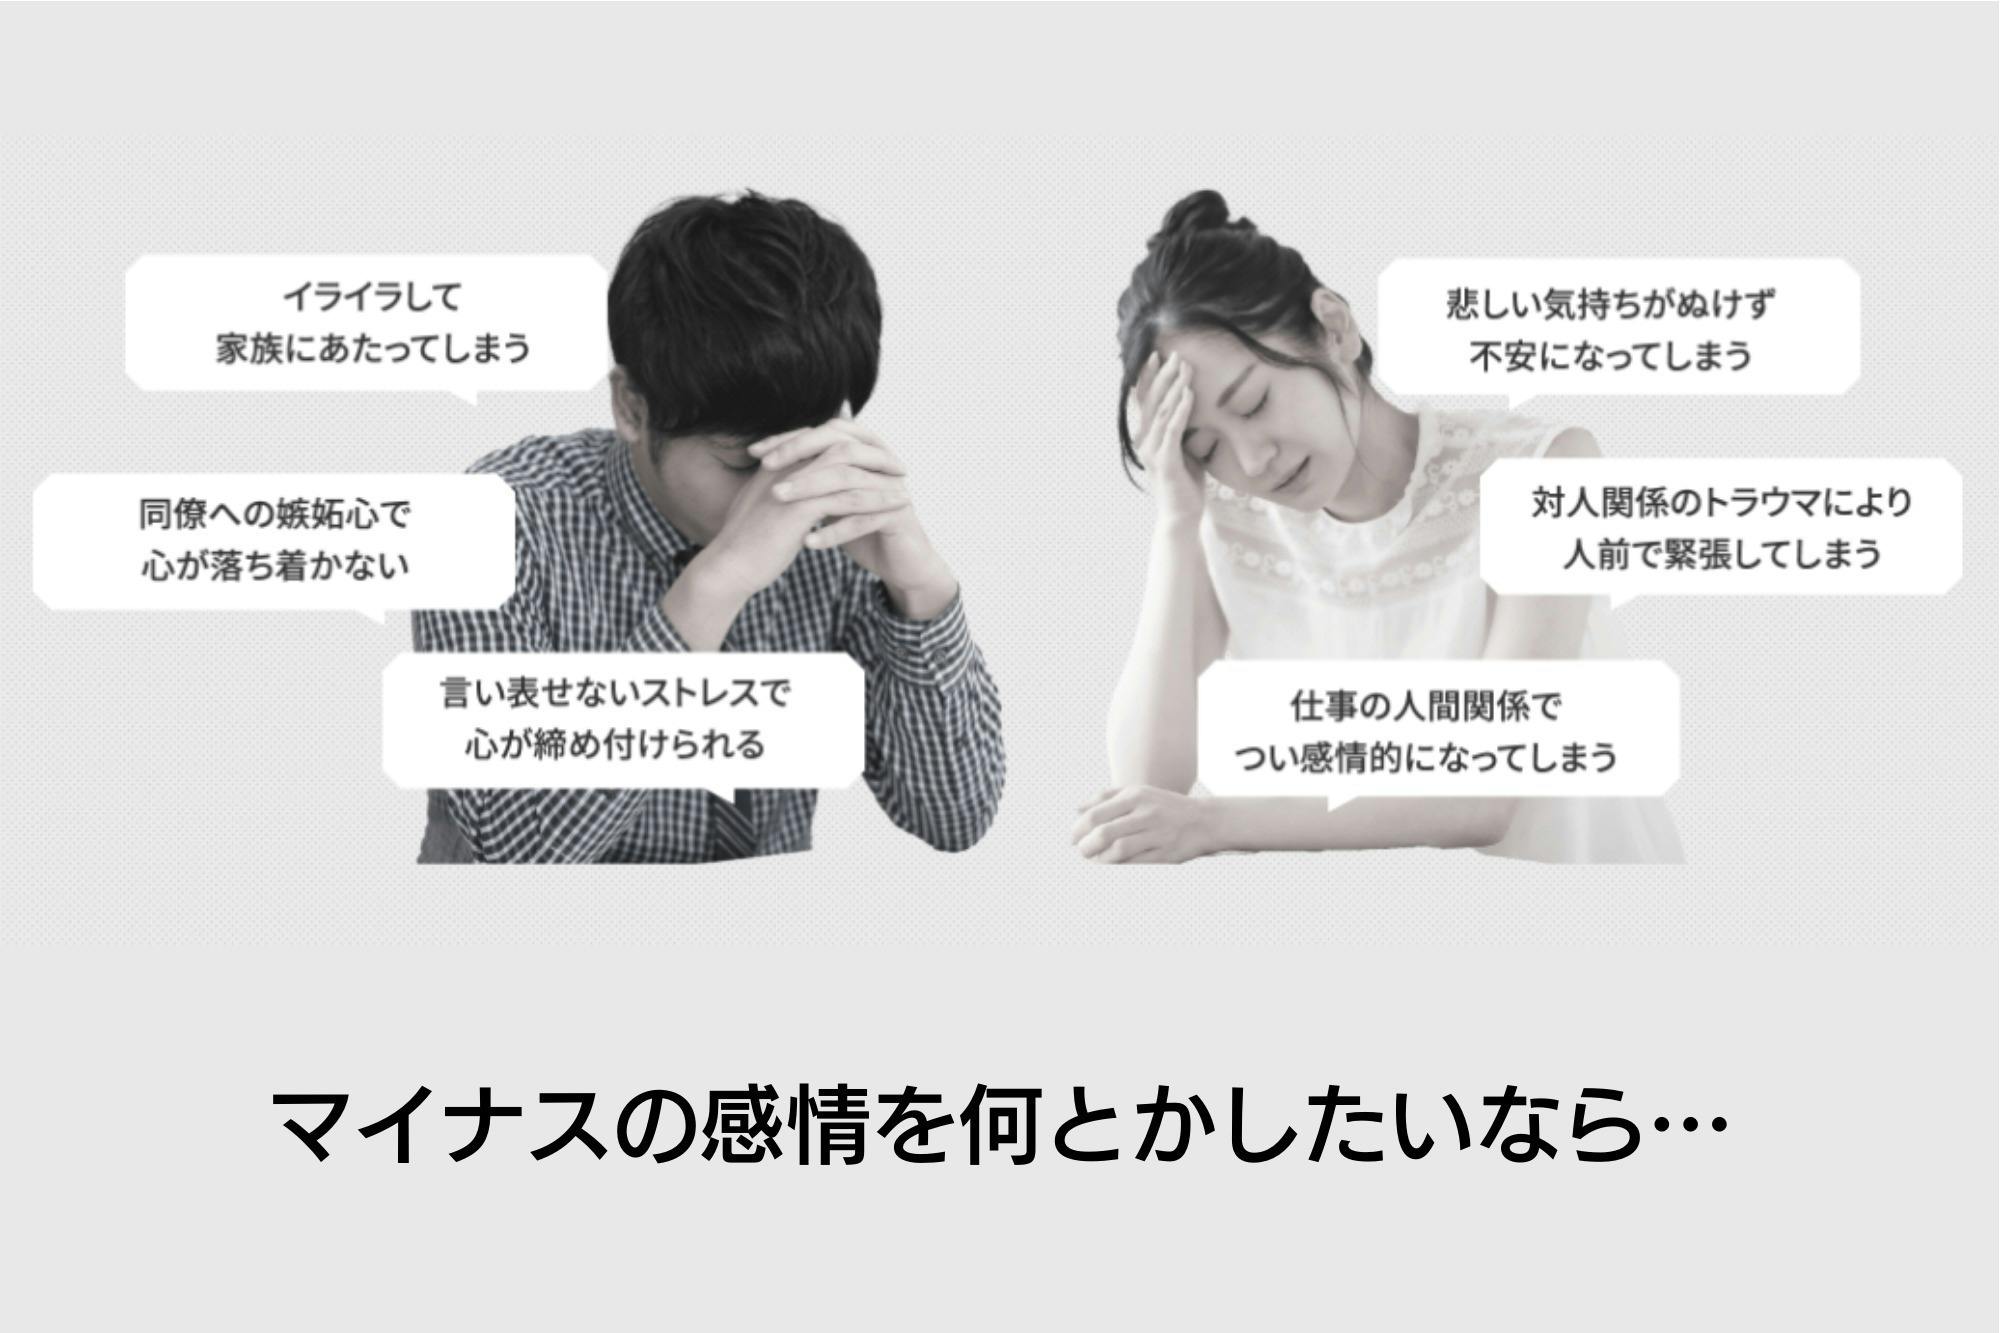 メンタルクリアプログラムで、日本中のマイナス感情・記憶の悩みをゼロにしたい！　CAMPFIRE　(キャンプファイヤー)